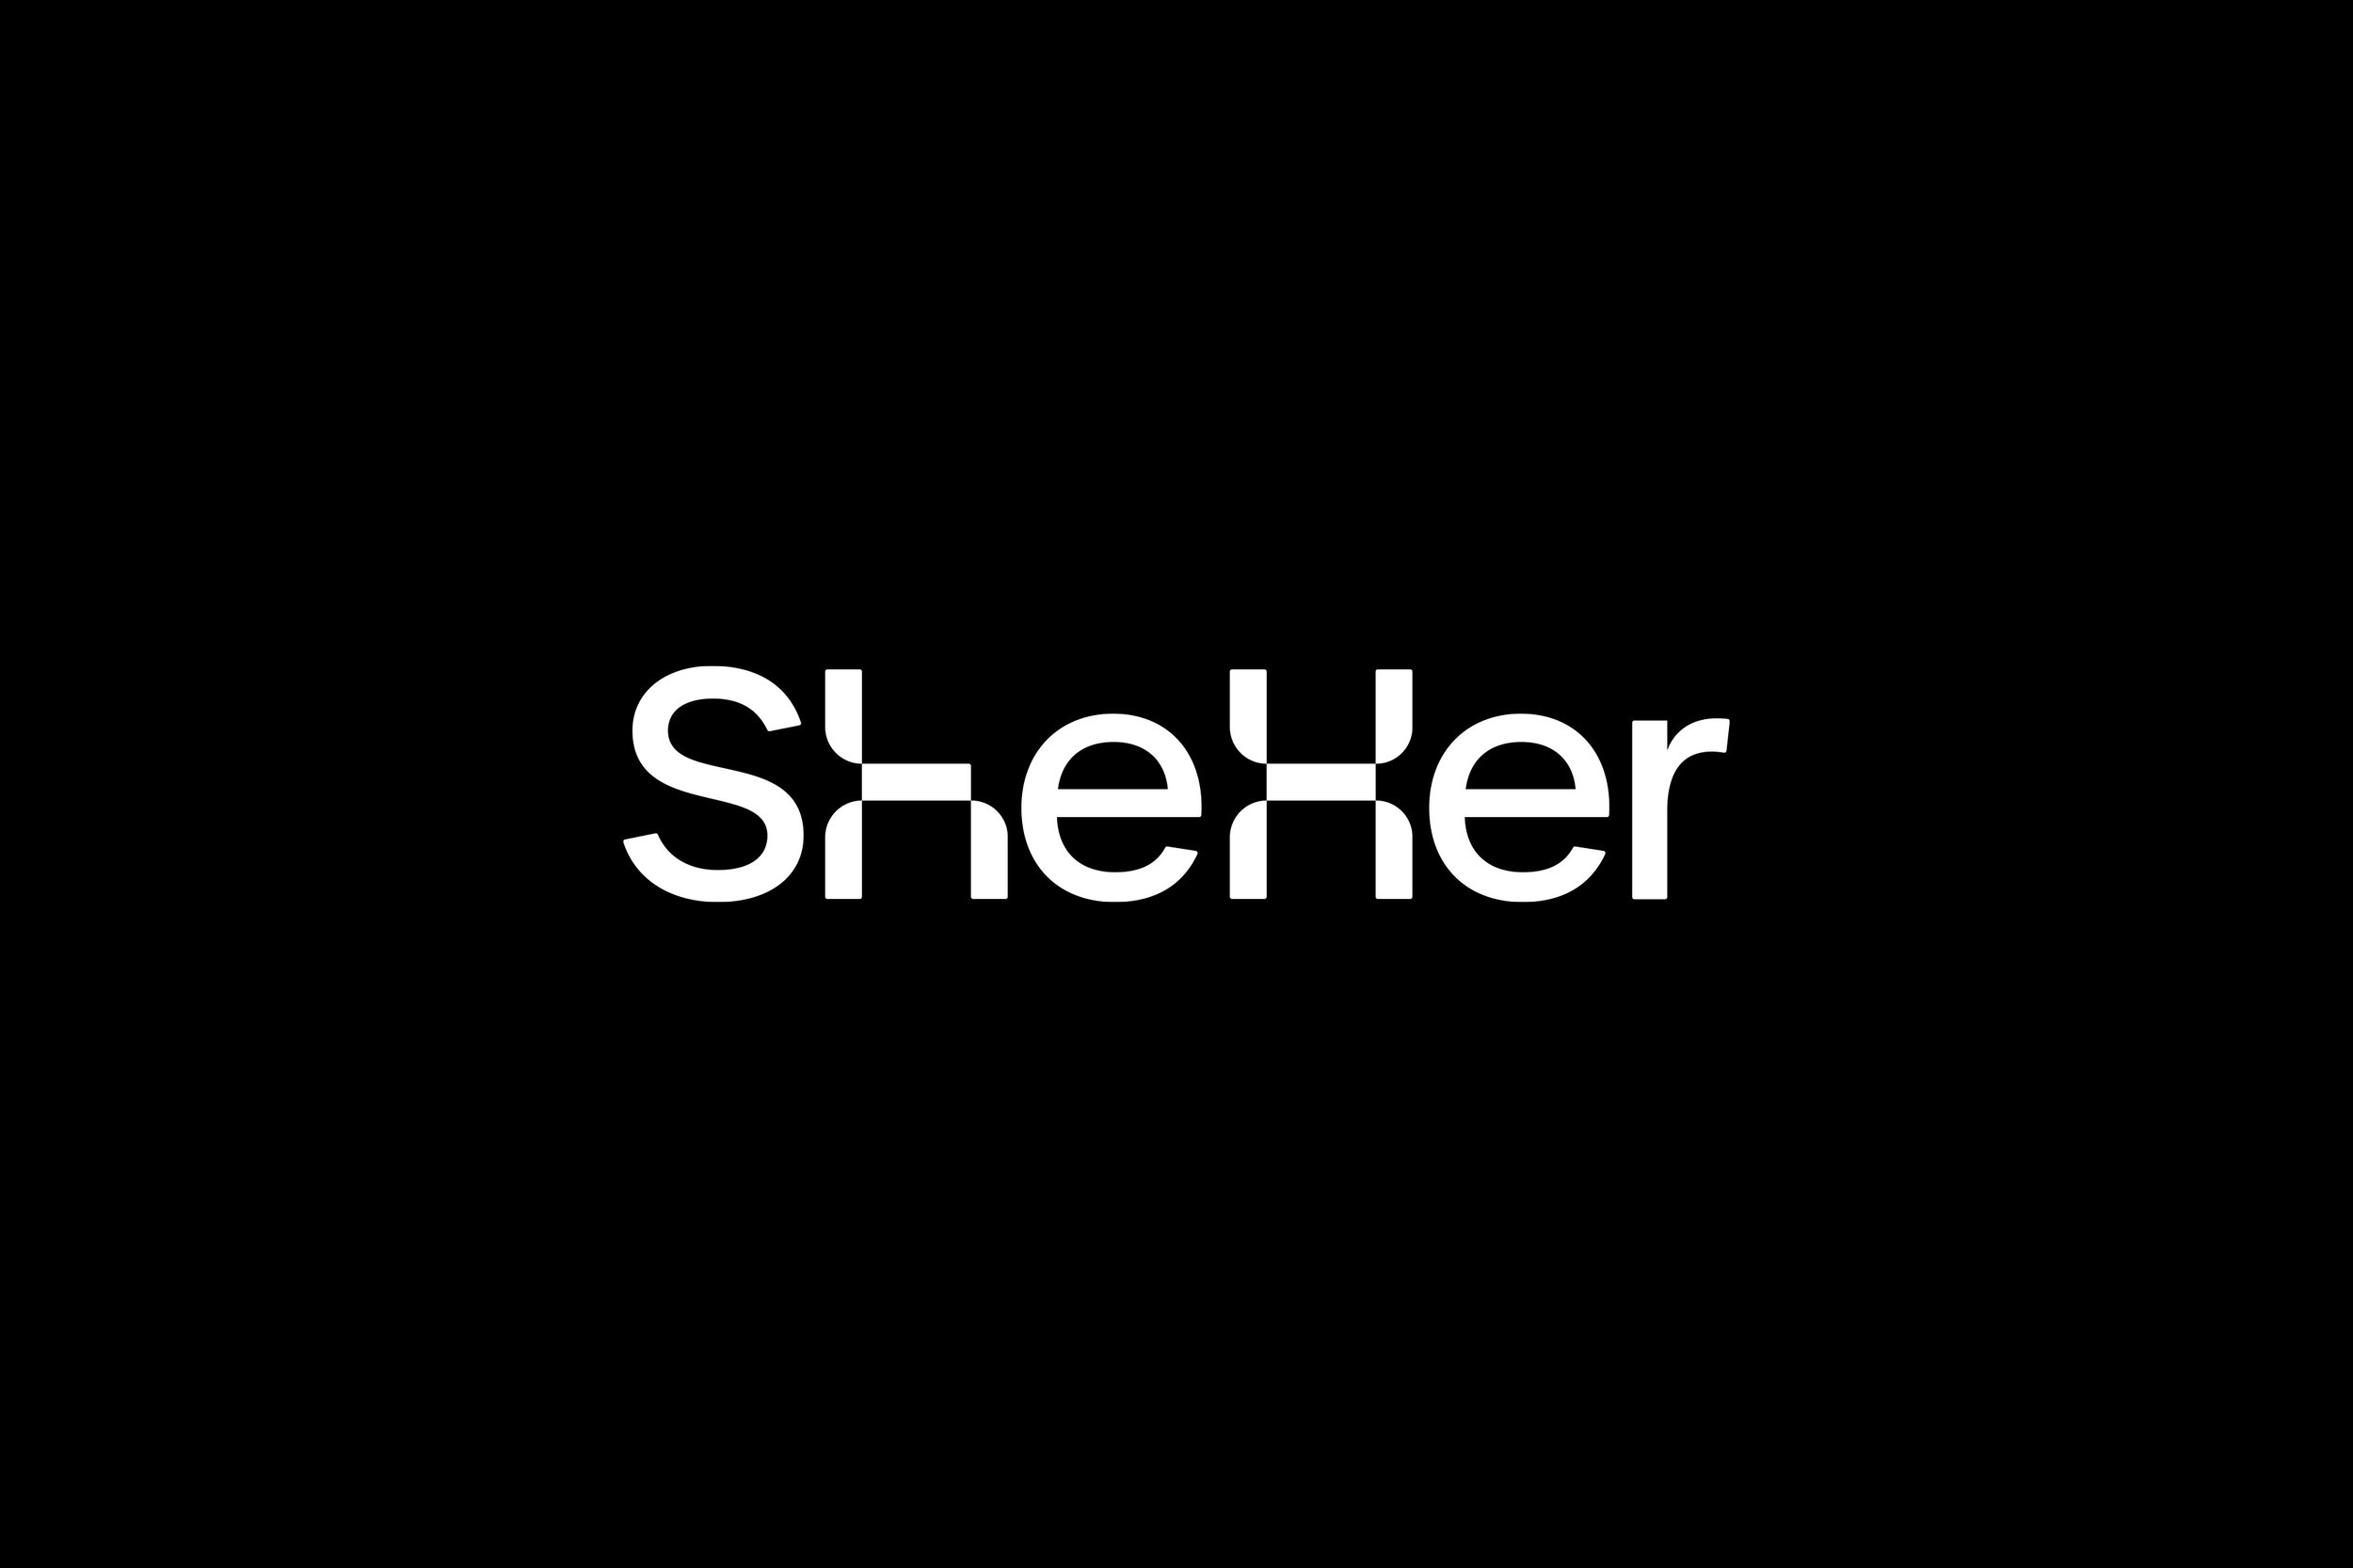 sheher-logo.jpg